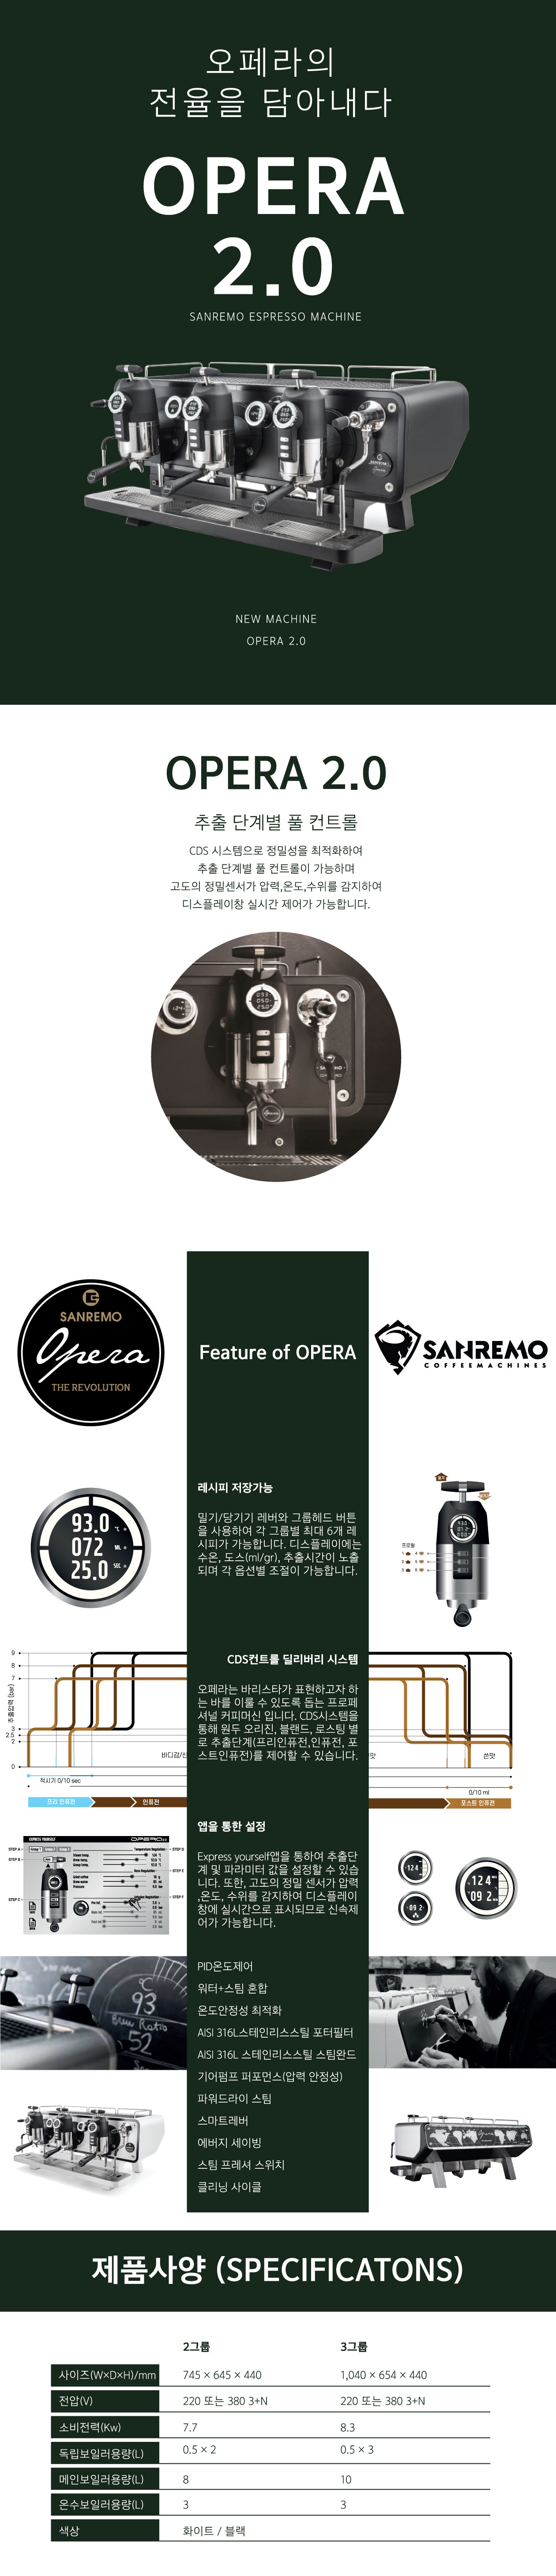 산레모 오페라 3그룹 (Sanremo Opera 3GR) - 다인커피시스템